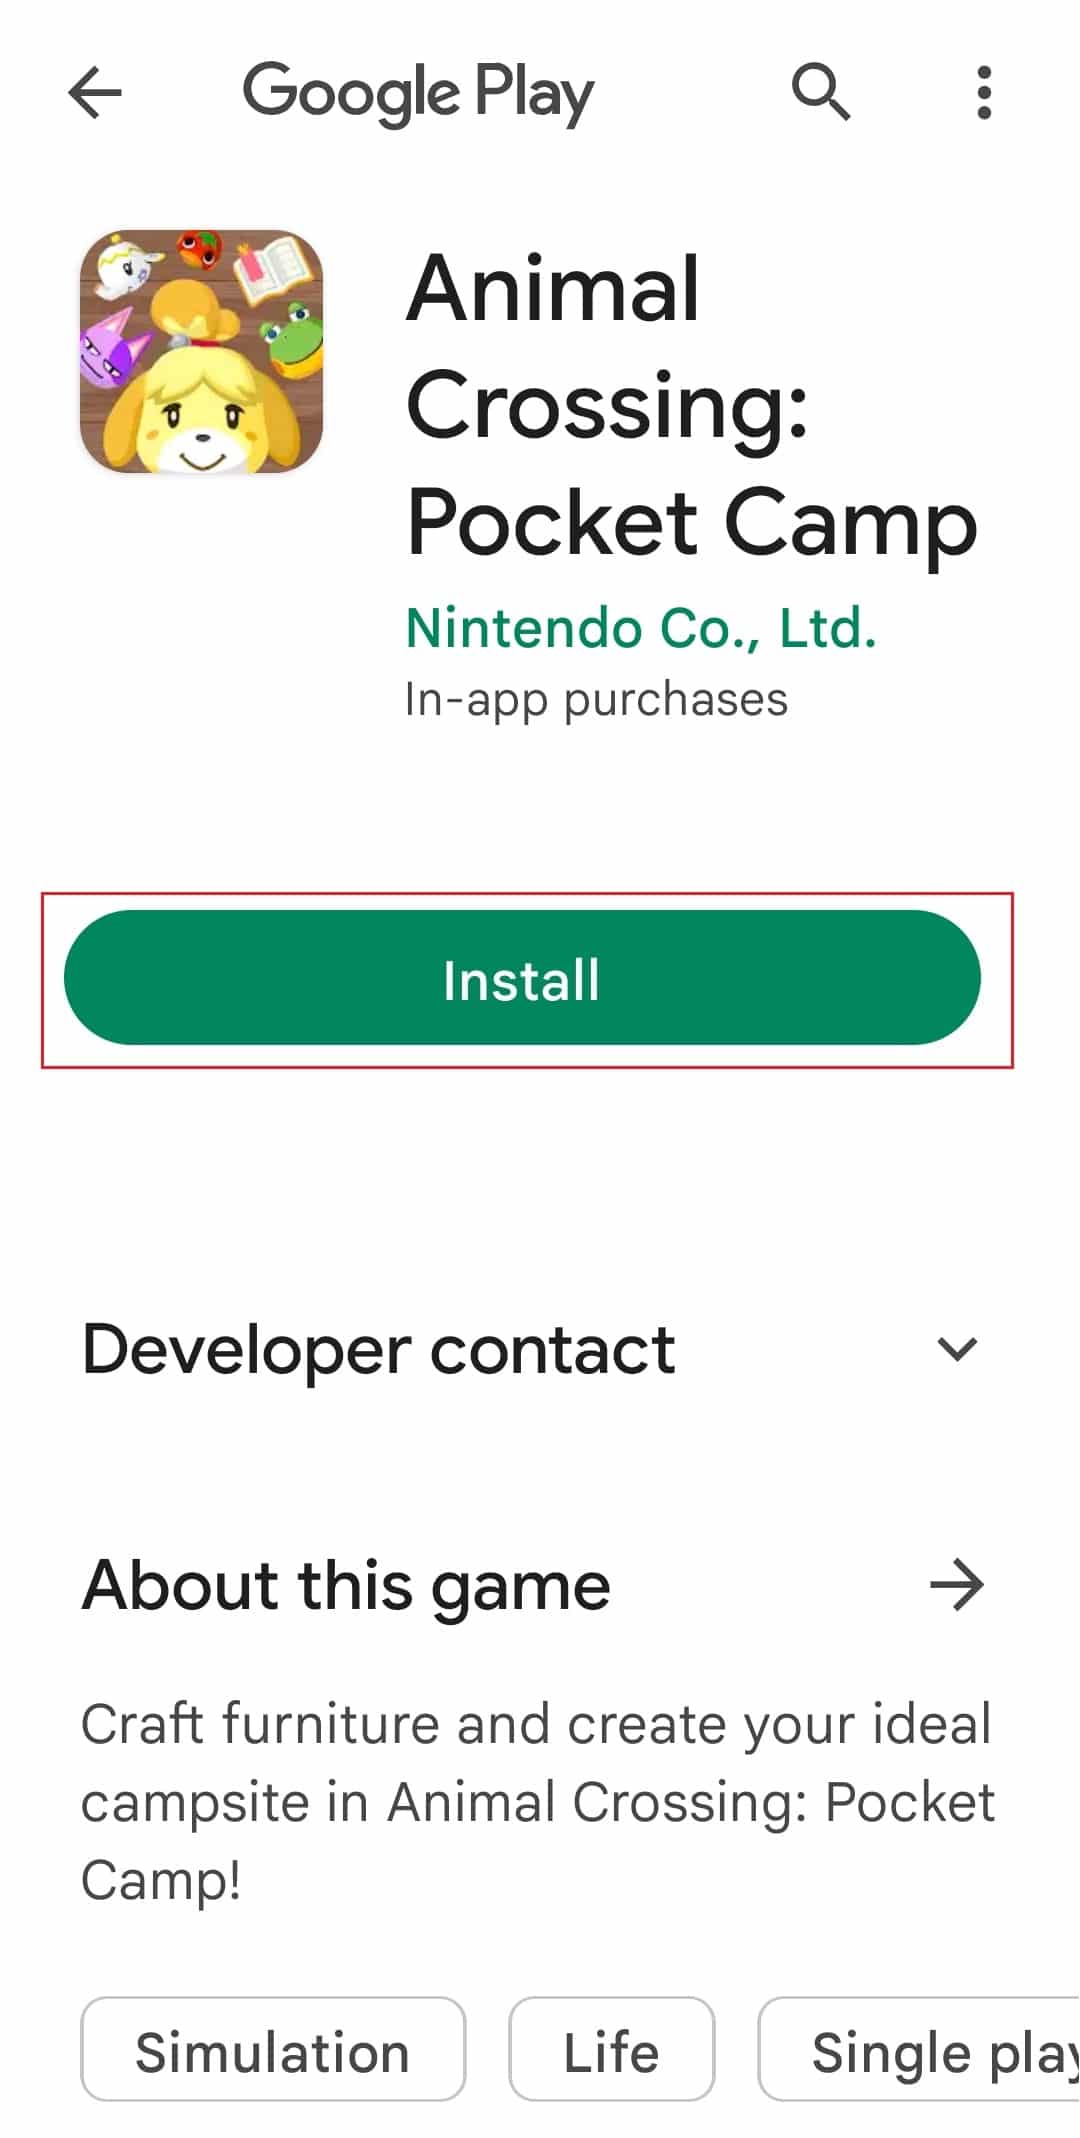 instale el juego Animal Crossing Pocket Camp desde Google Play Store